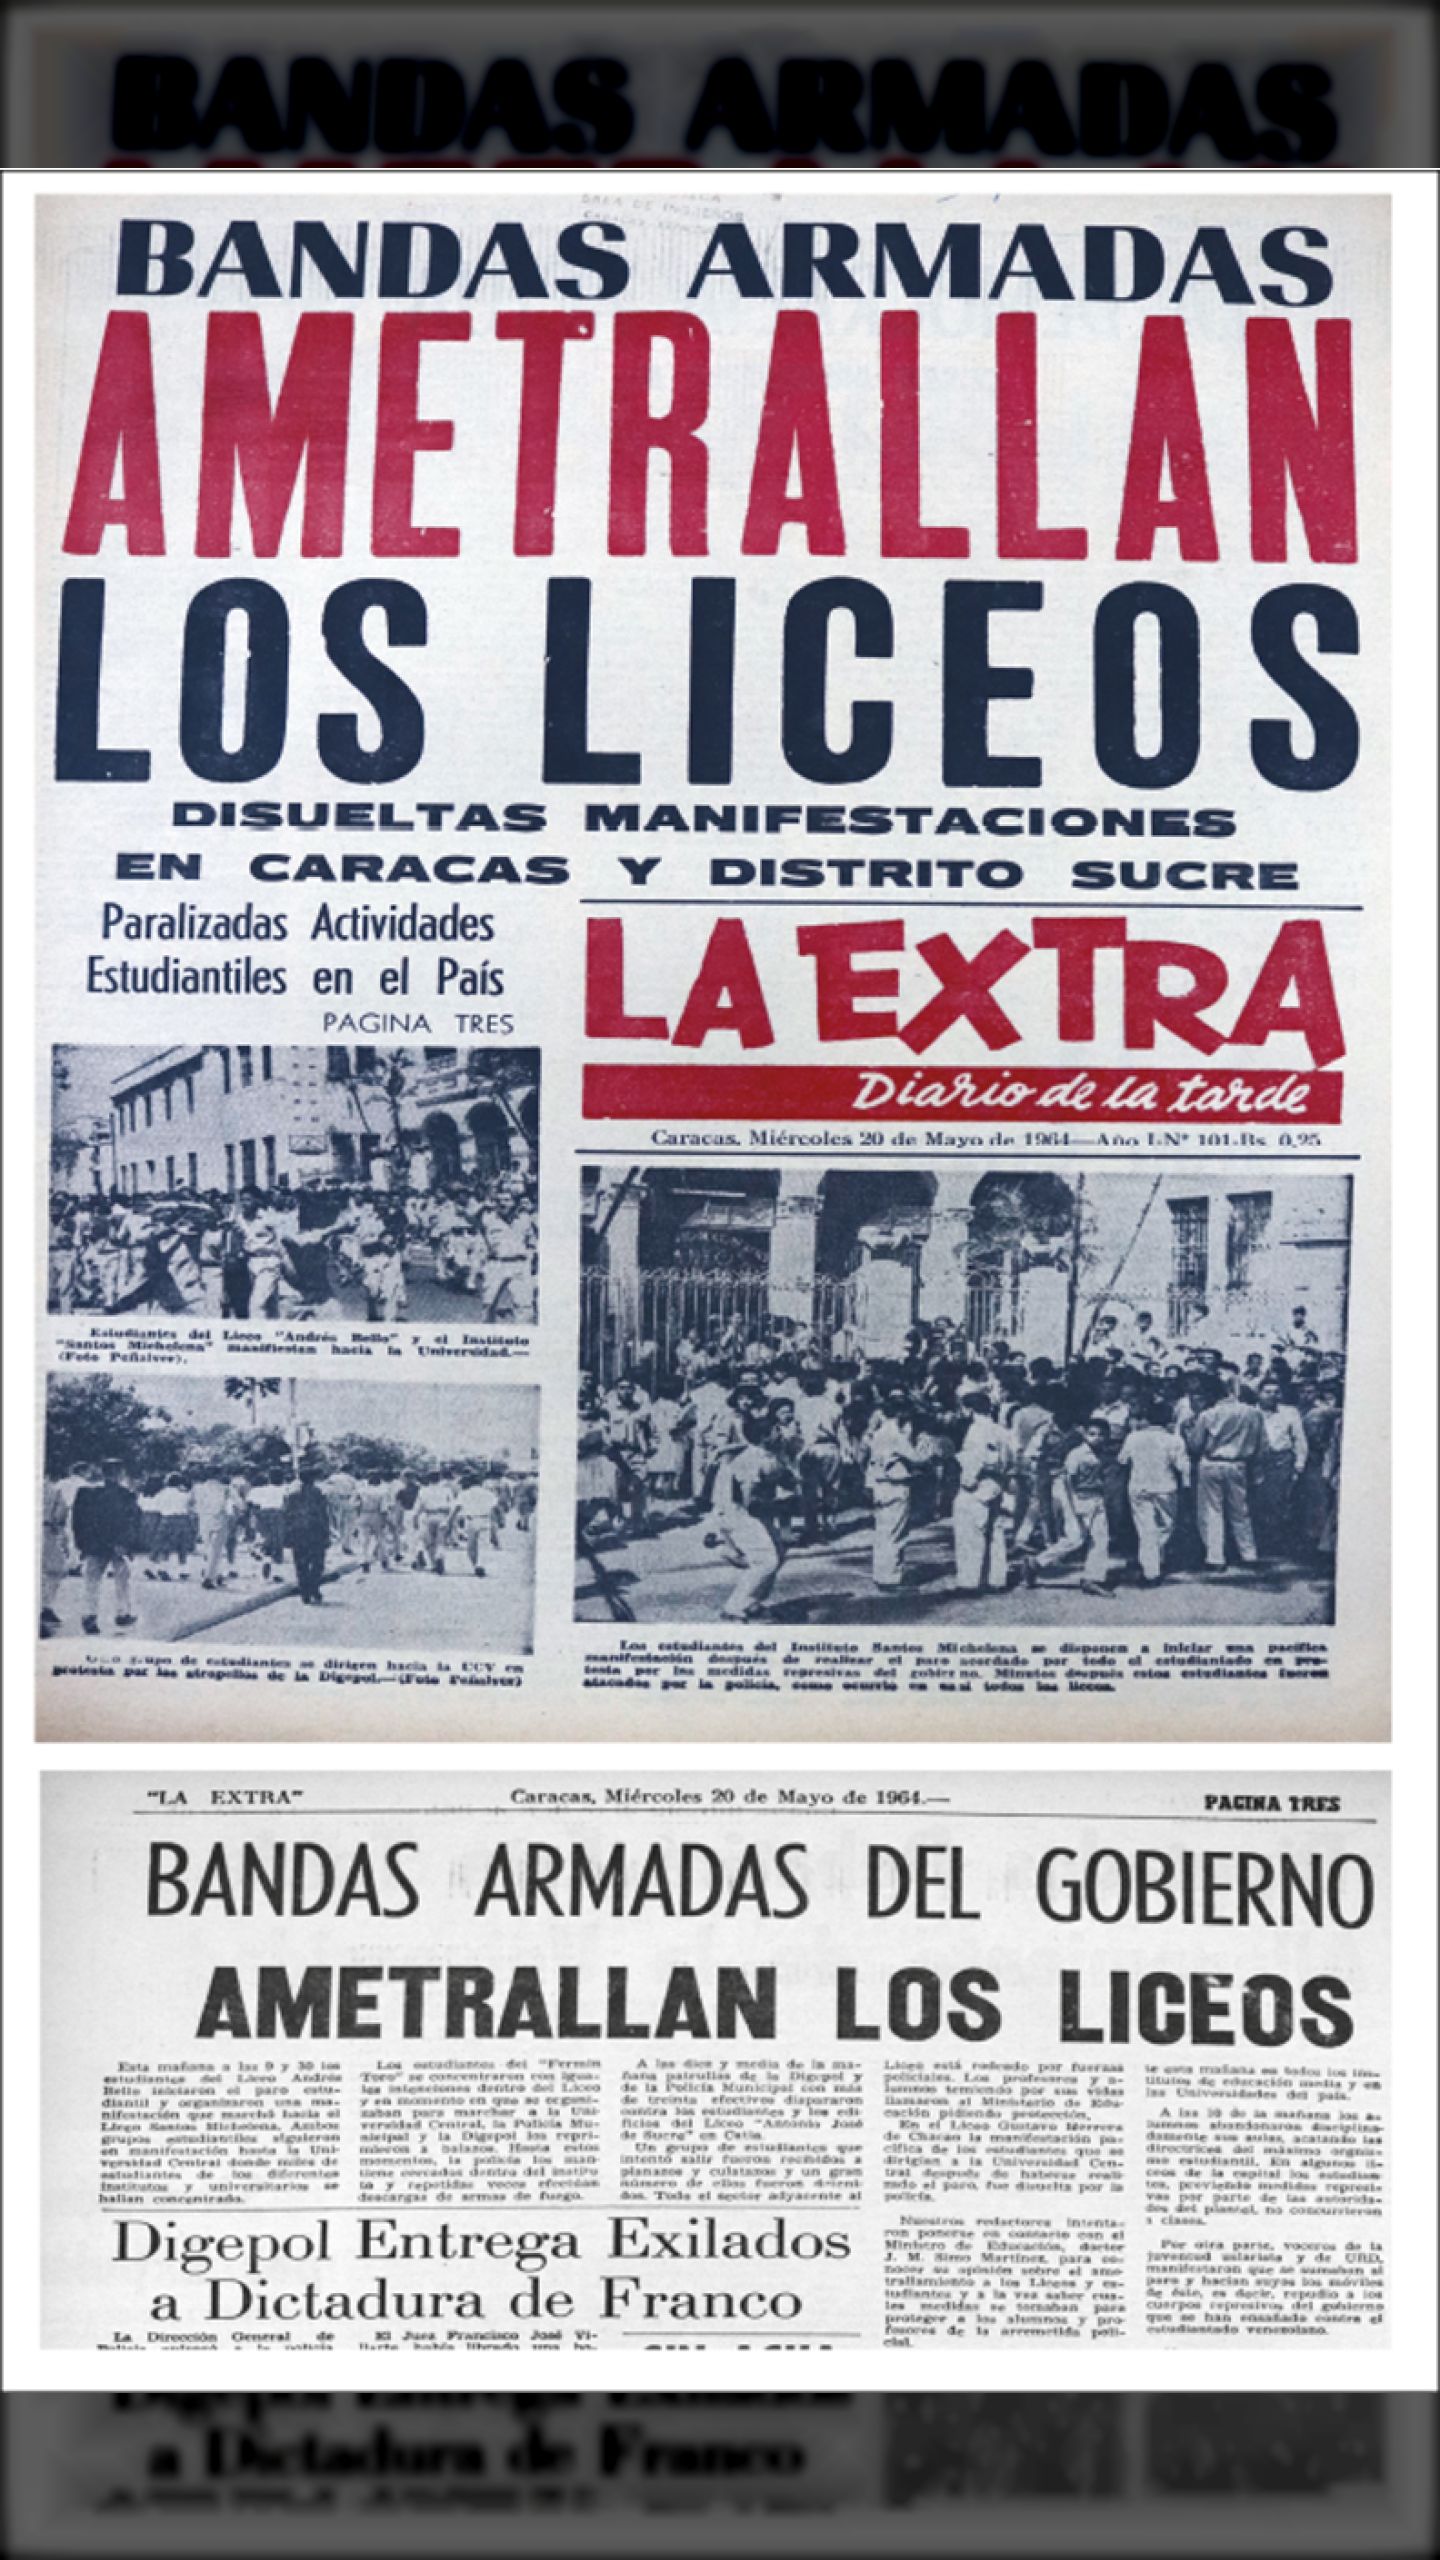 BANDAS ARMADAS AMETRALLAN LOS LICEOS (LA EXTRA, 20 de mayo de 1964)